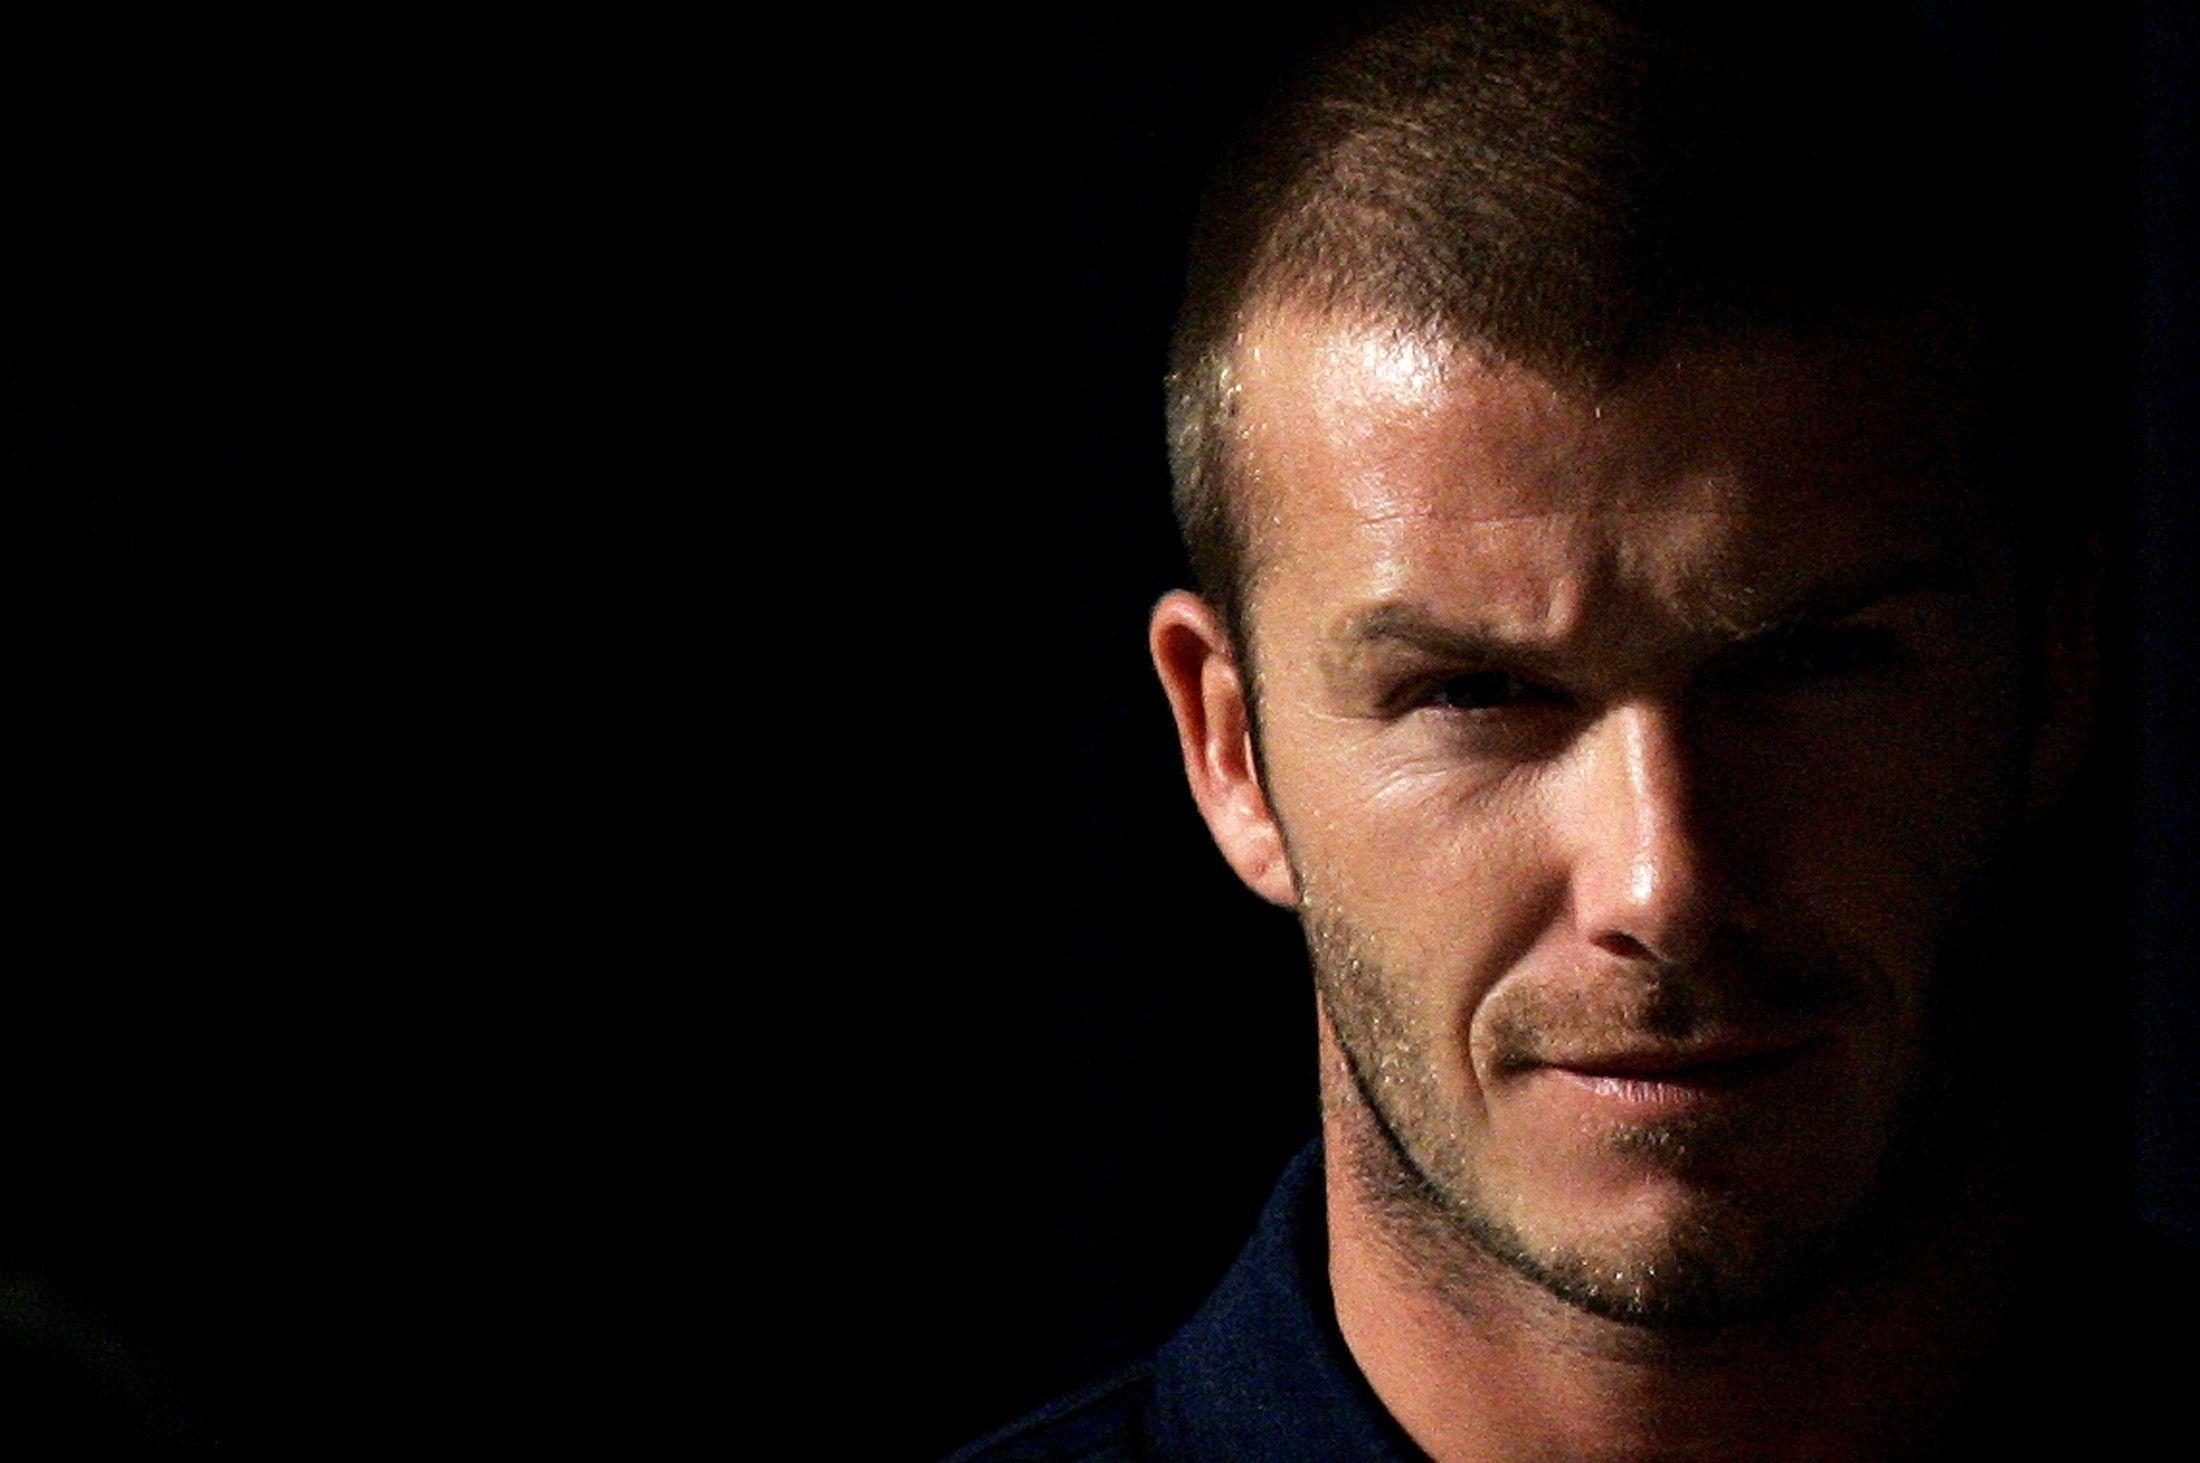 Download David Beckham Mp3 Songs, HD video, Wallpaper